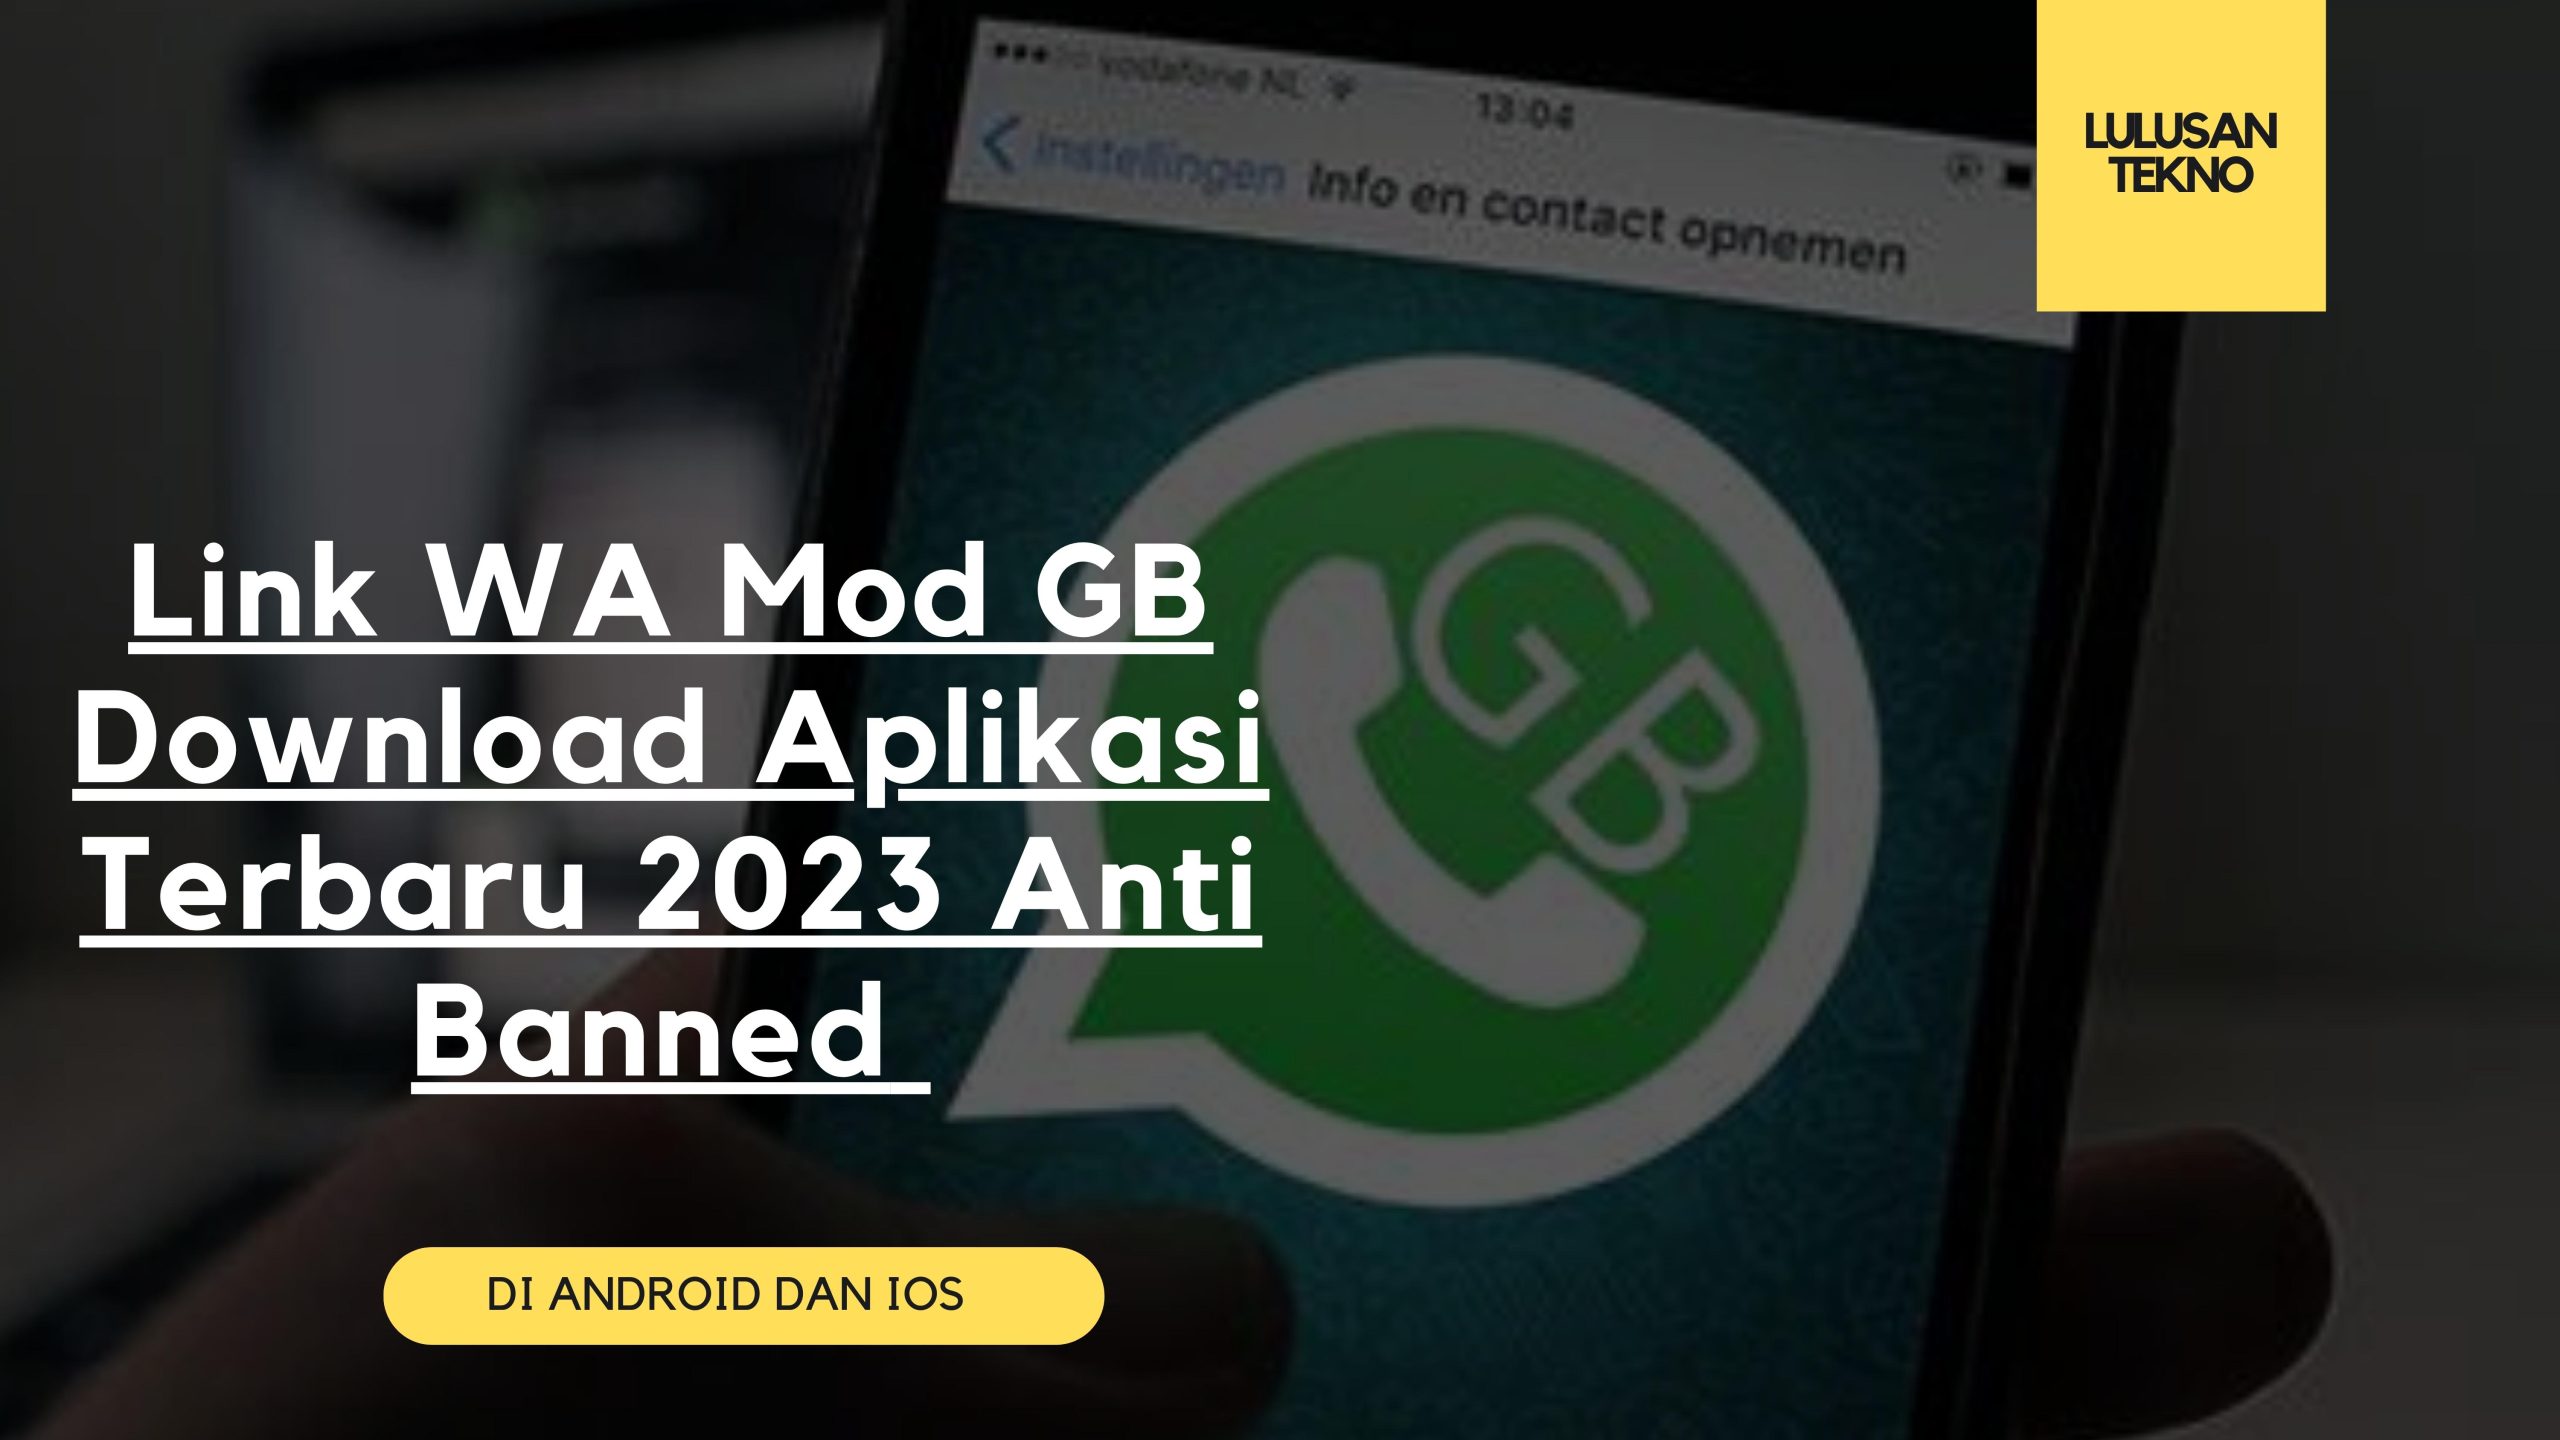 Link WA Mod GB Download Aplikasi Terbaru 2023 Anti Banned